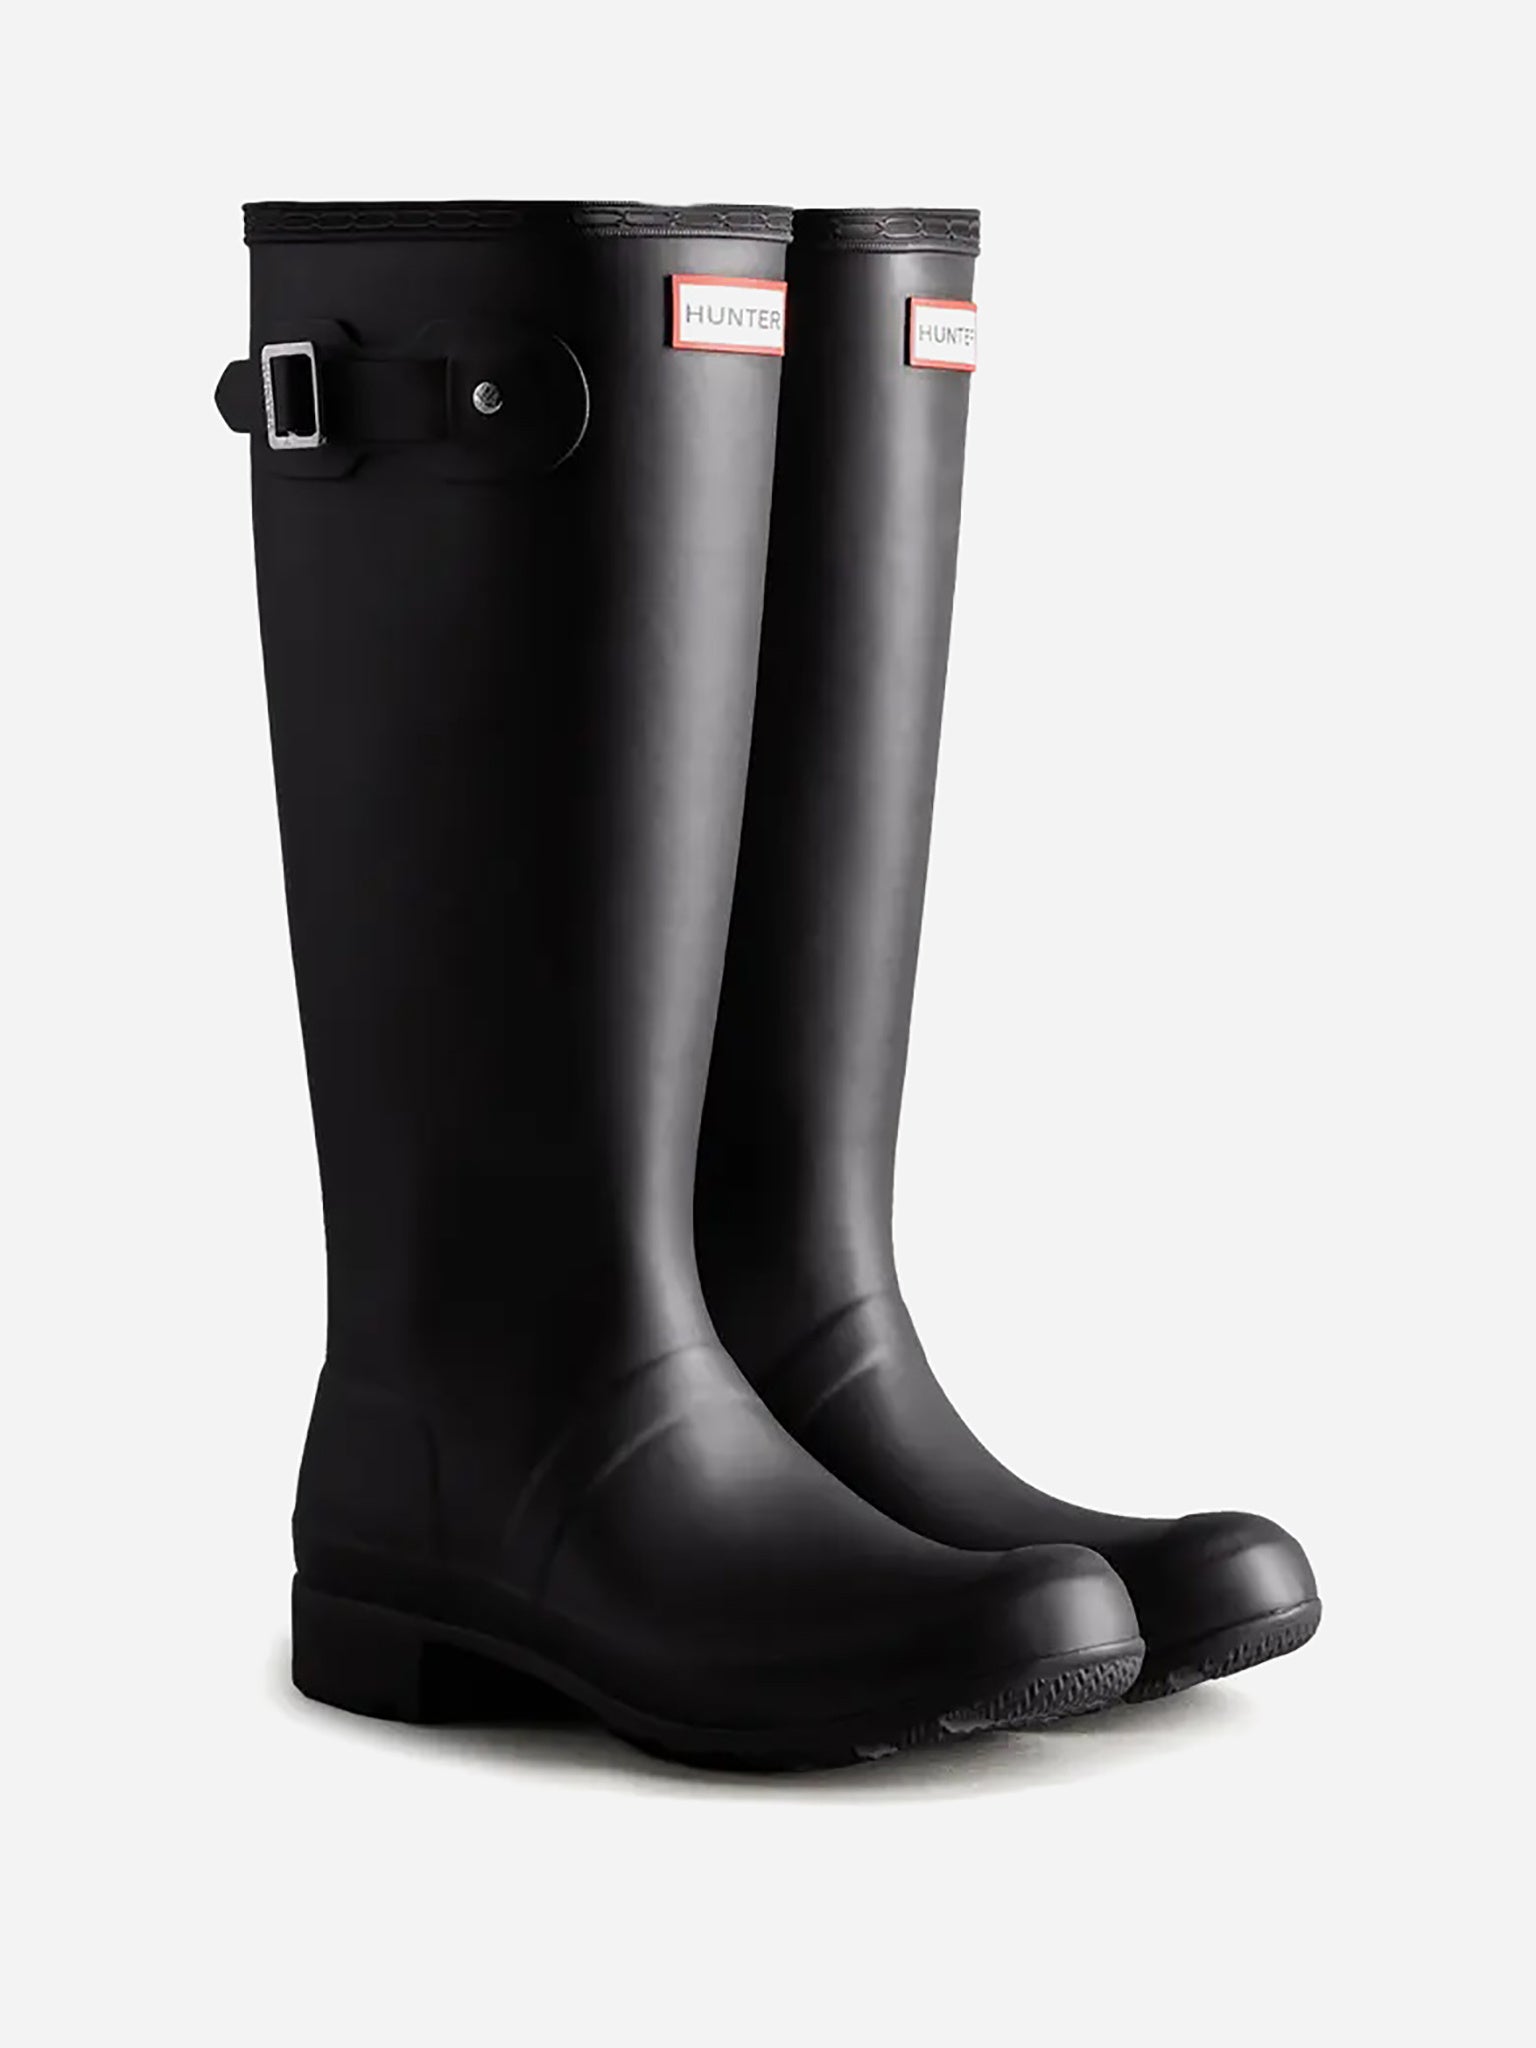 Hunter Rain Boots Women's Original Tour Tall Packable Rain Boot